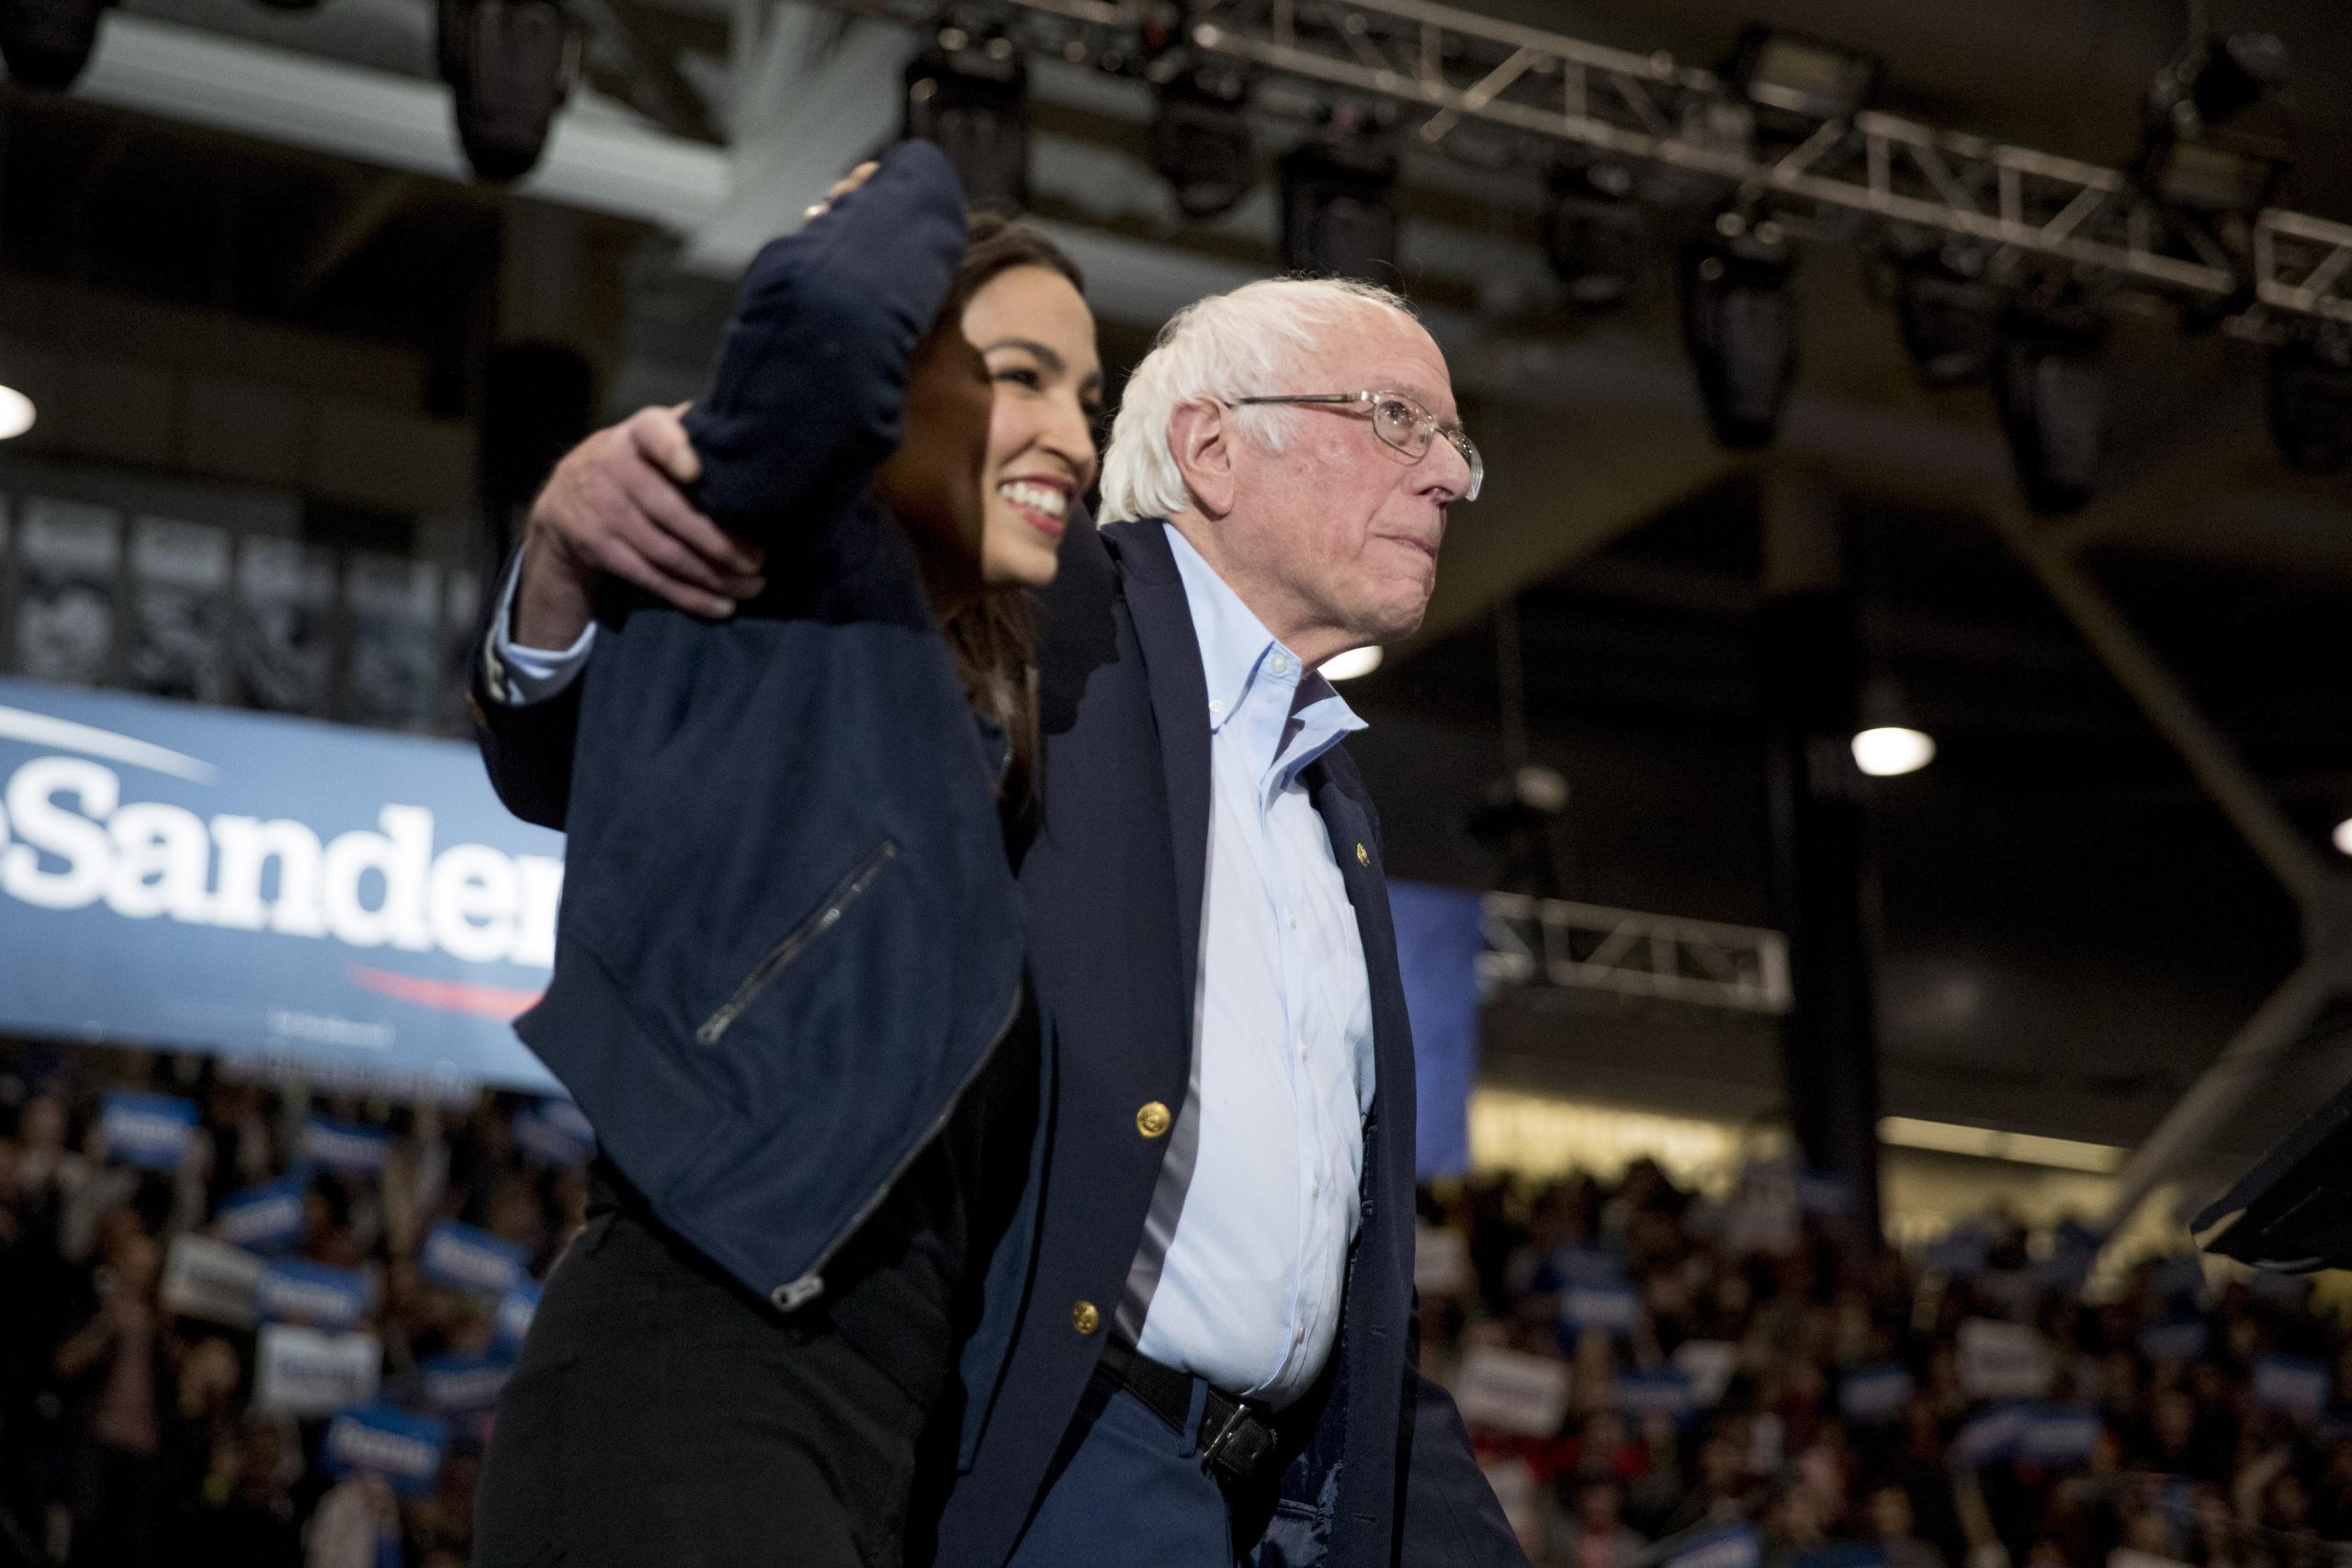 “Vamos a ganar porque tenemos el proyecto que aborda las necesidades de los trabajadores de este país”, declaró Sanders, anoche acompañado por la congresista de origen boricua Alexandria Ocasio-Cortez.